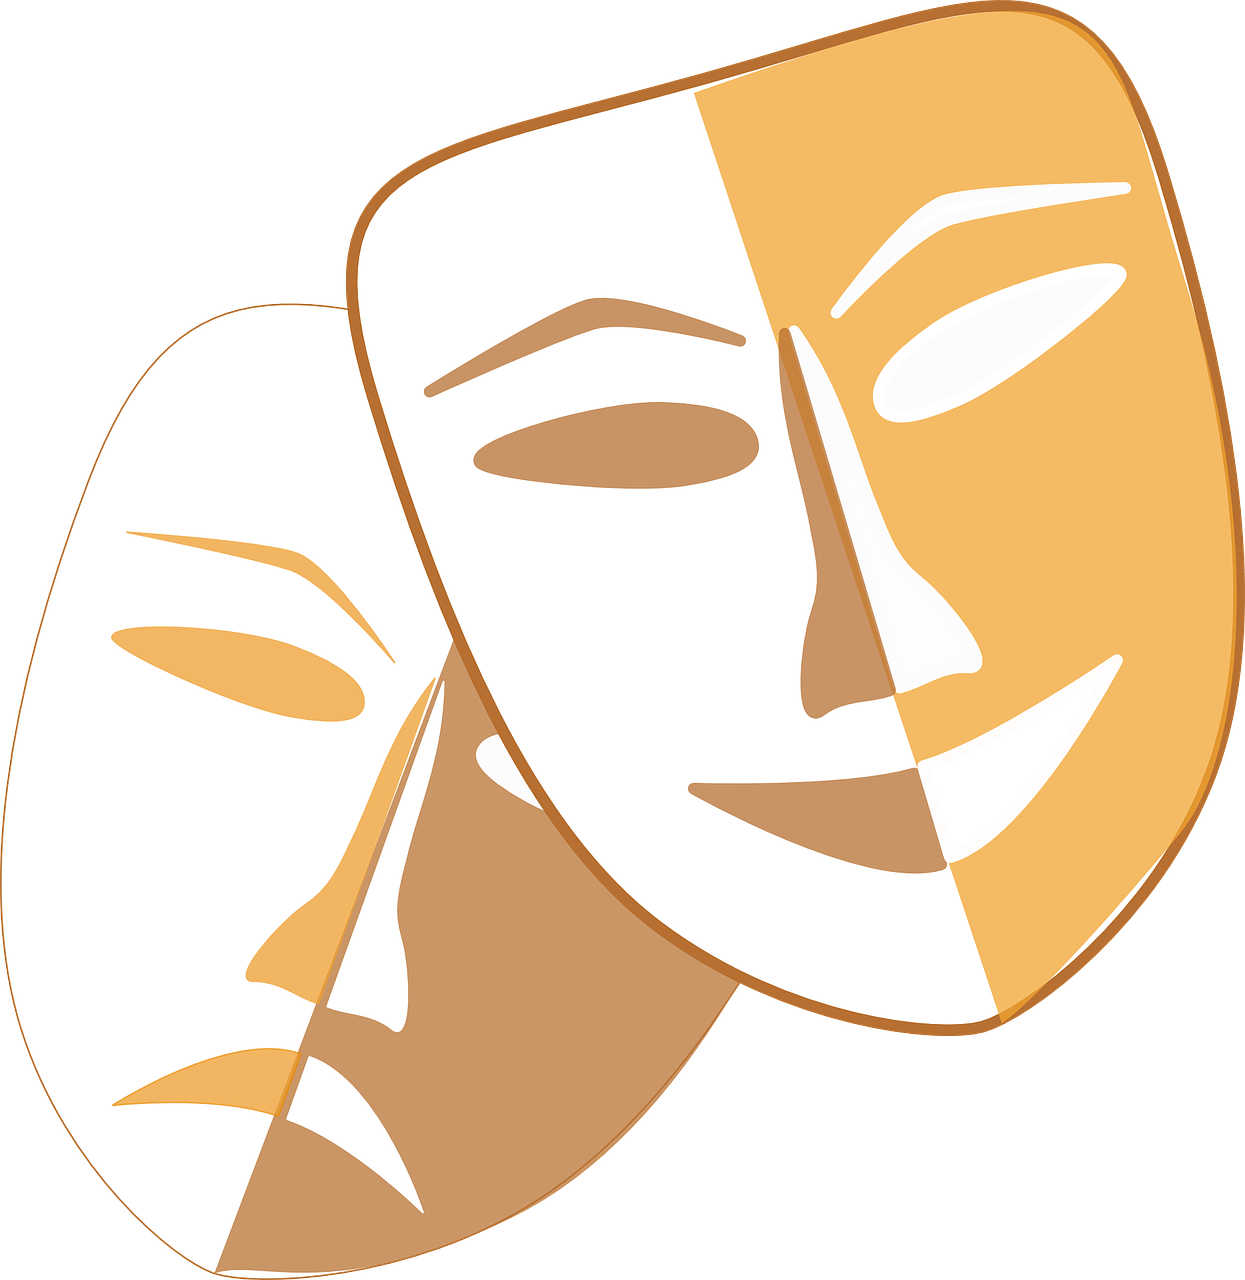 Theatre Masks (1245x1280)